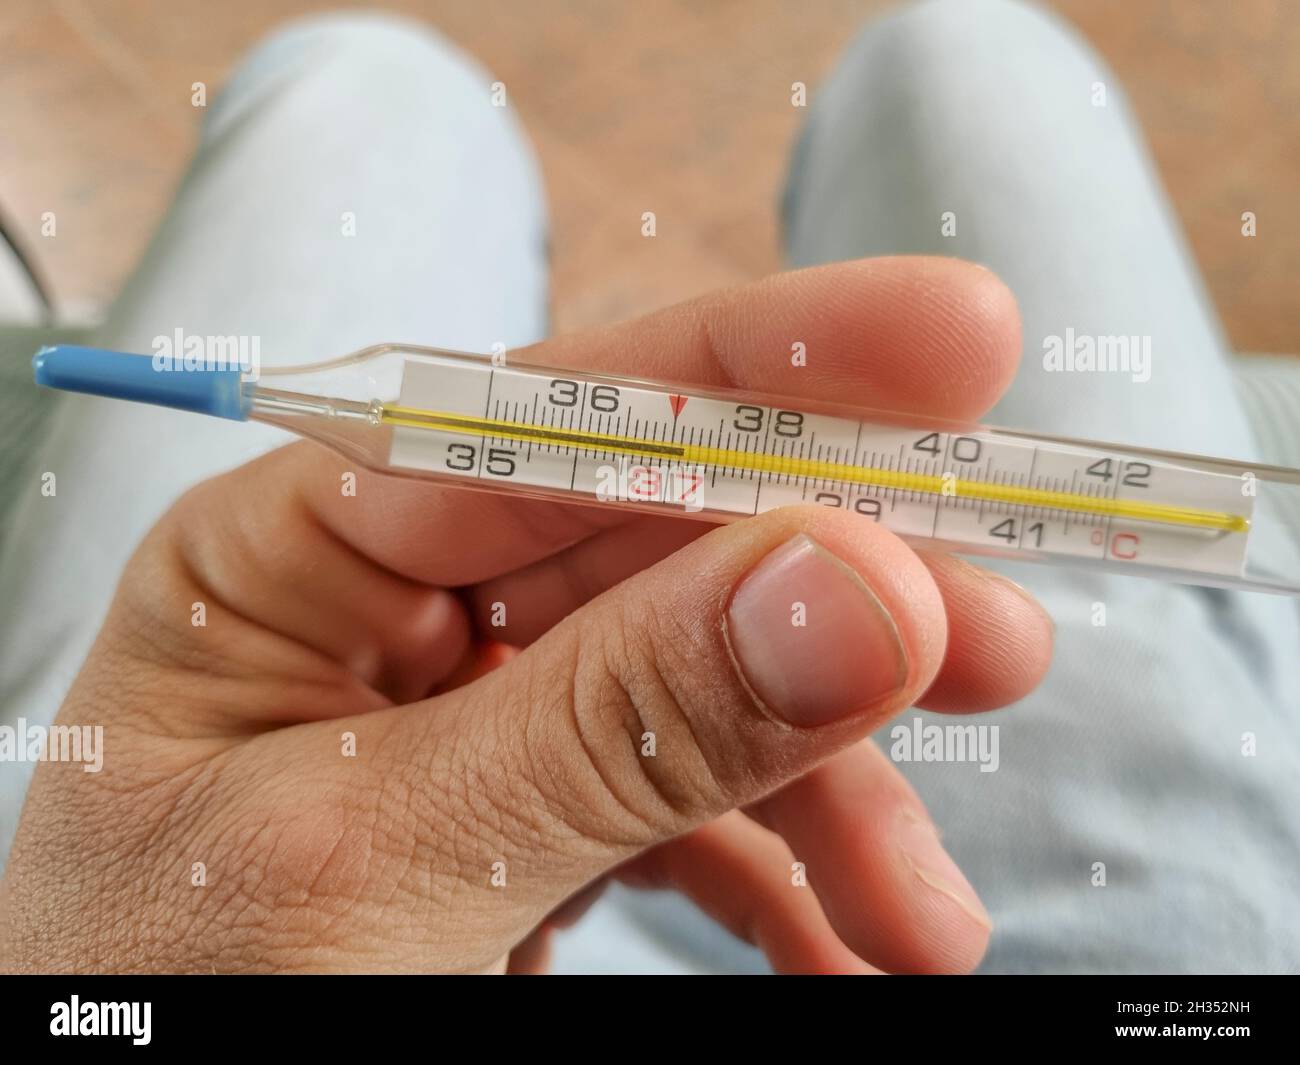 Uomo tenere un termometro di febbre da mercurio dopo la misurazione, coronavirus covid19 pandemica Foto Stock